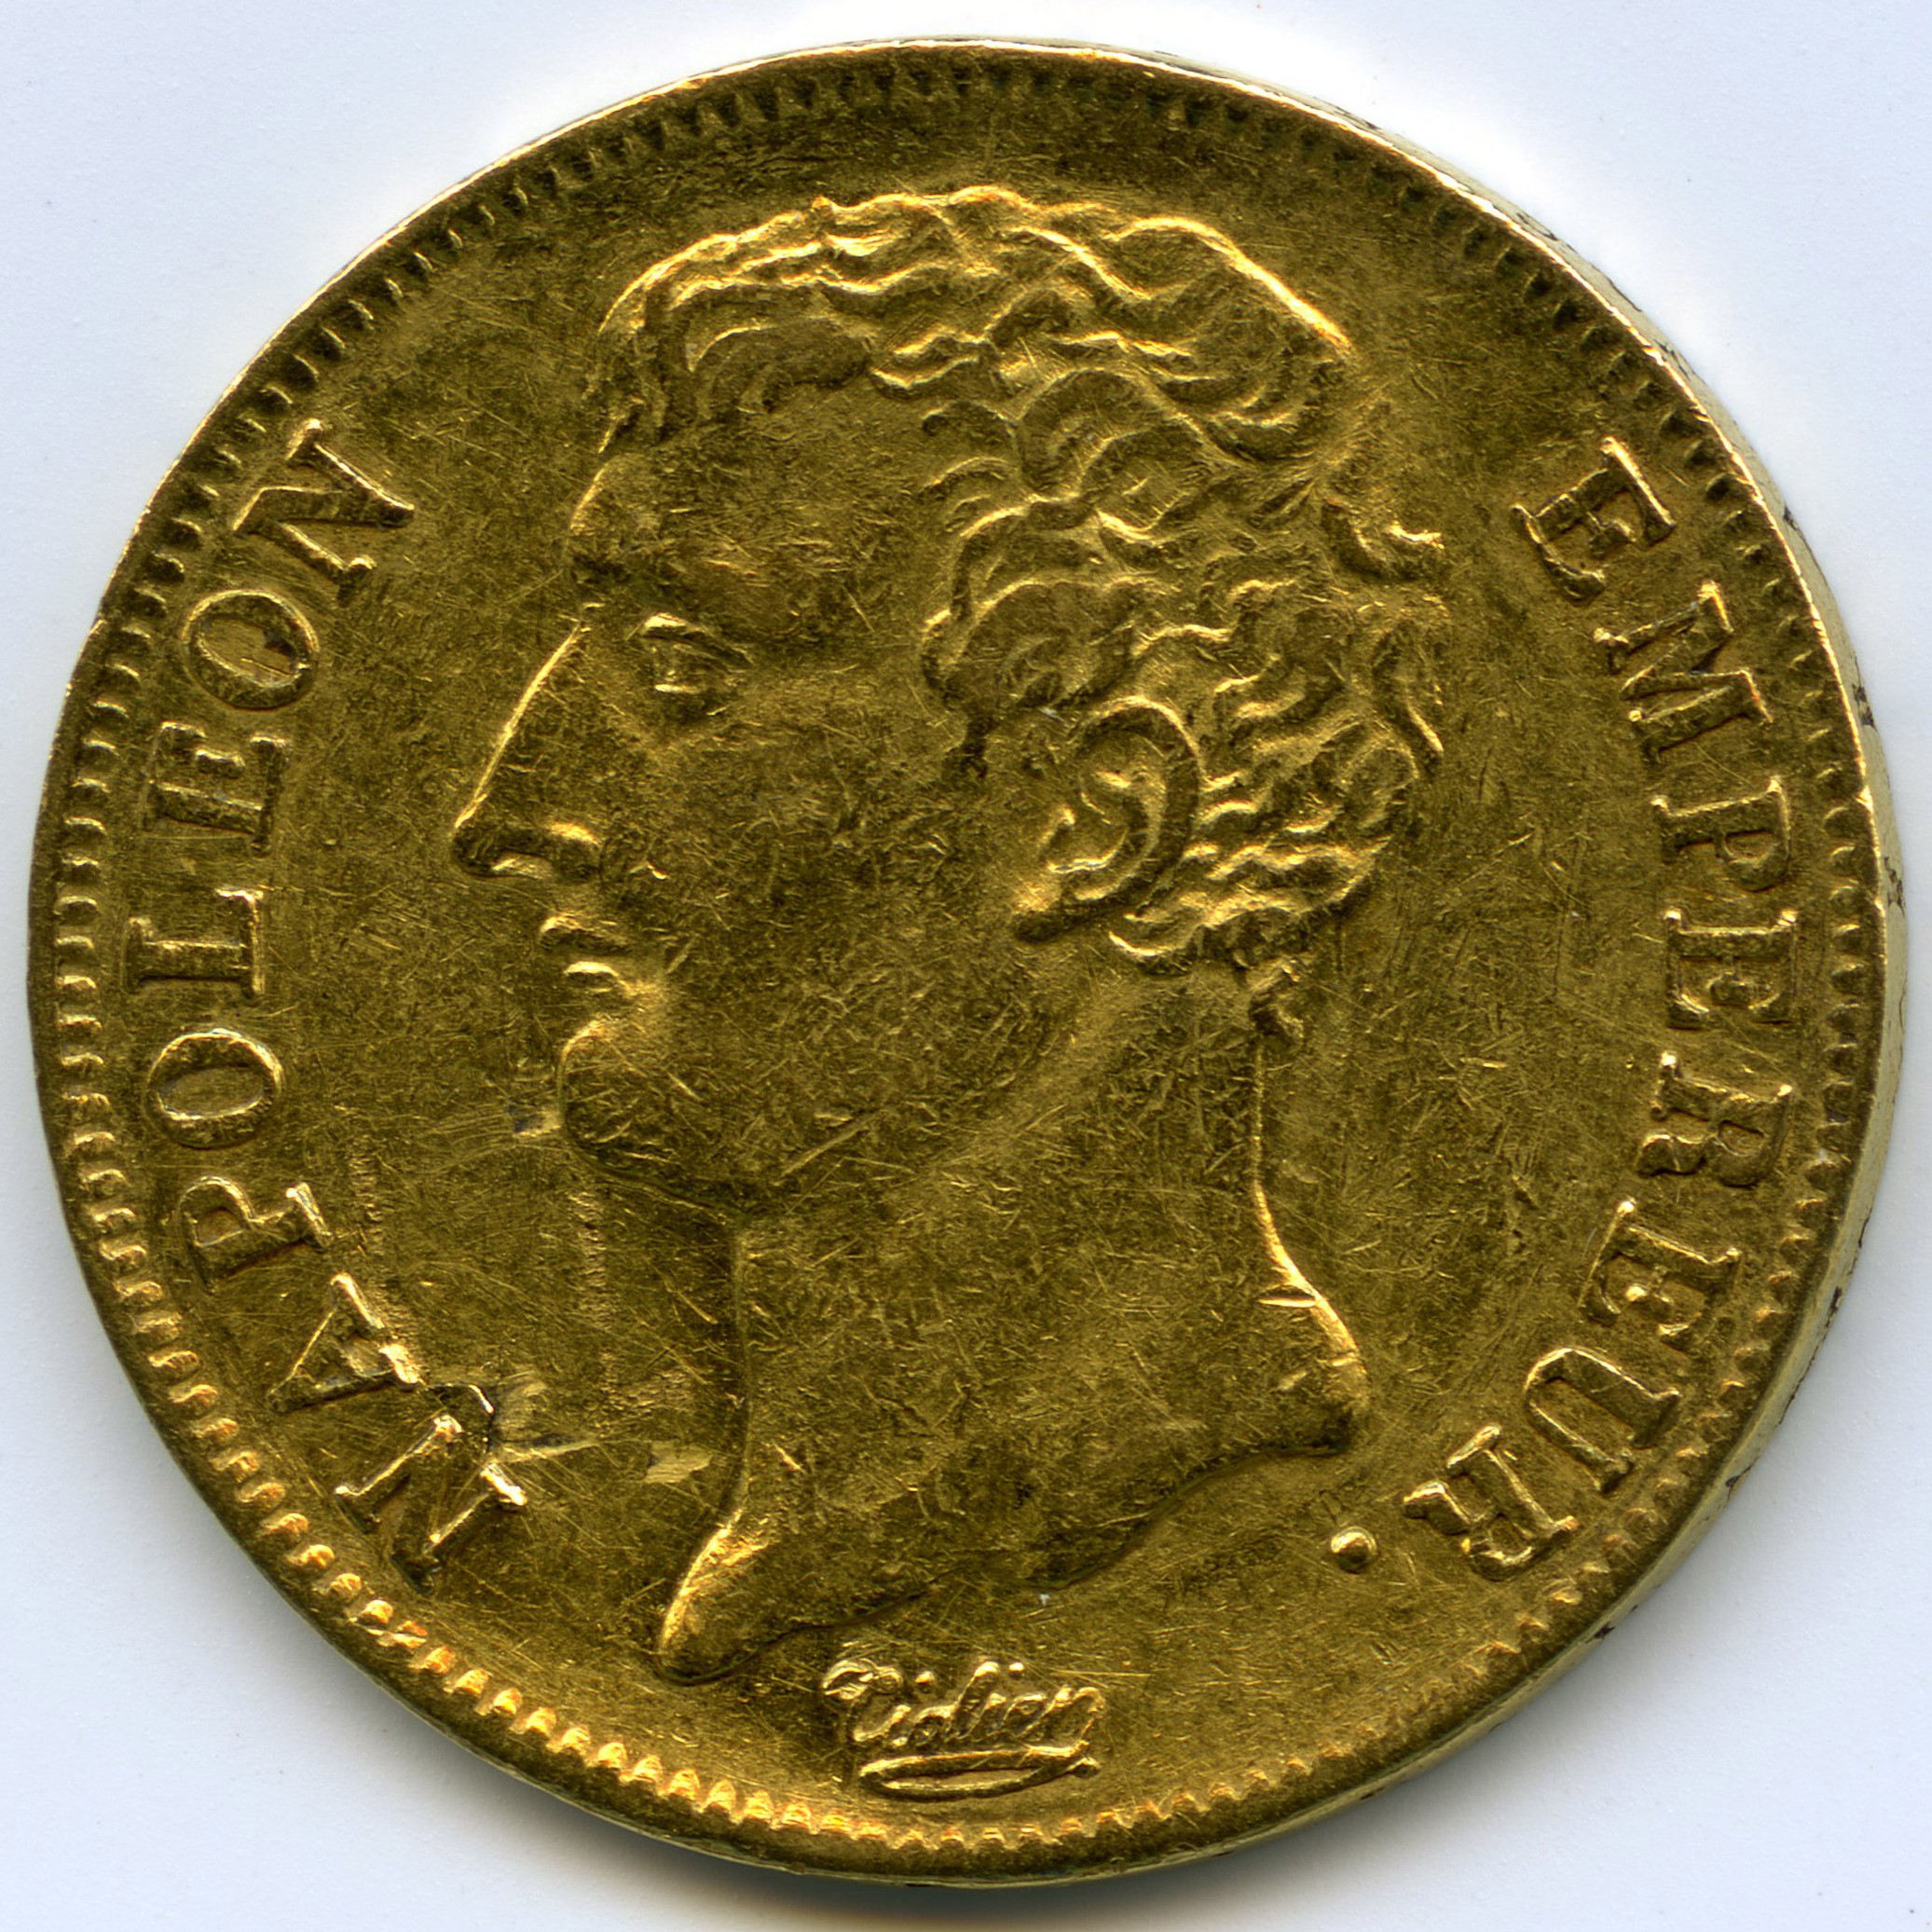 Napoléon Empereur - 20 Francs - An 12 avers